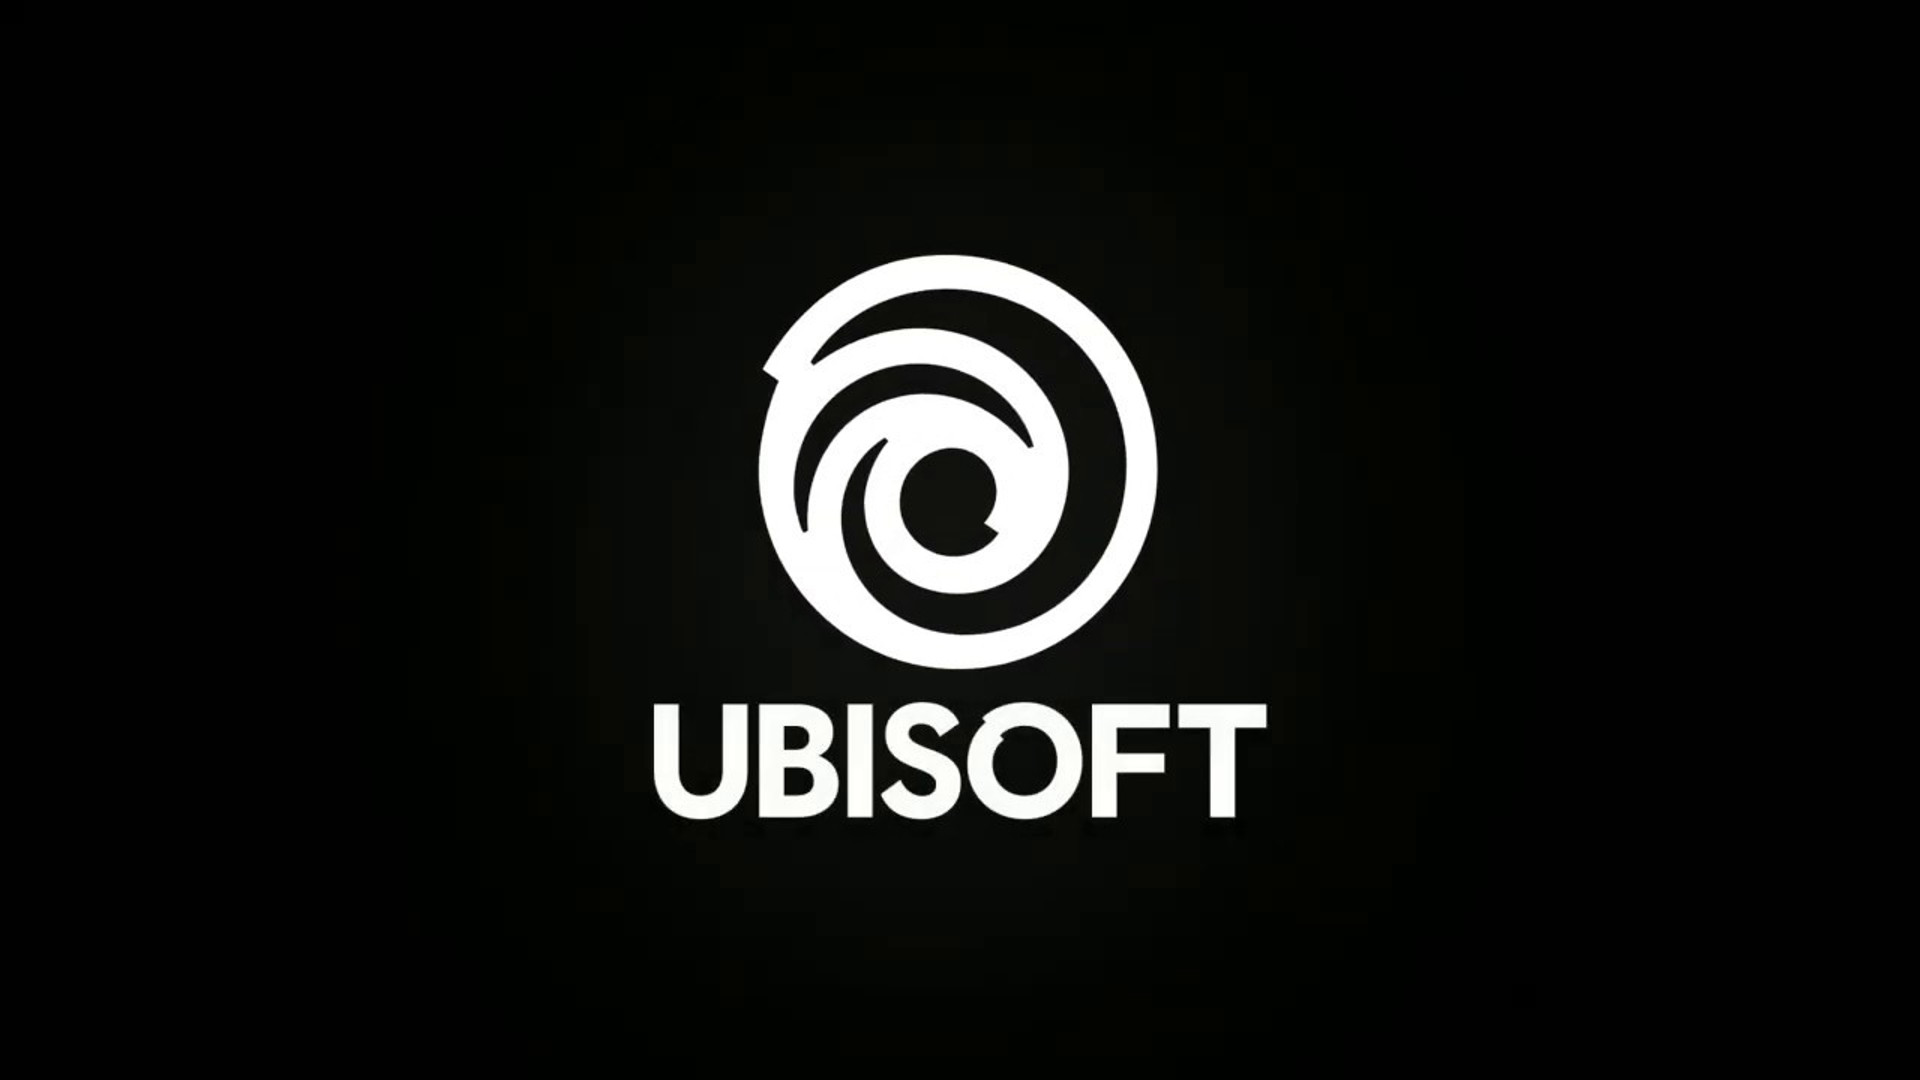 Il direttore di Ubisoft risponde alla lettera aperta dei dipendenti, afferma che Studio ha "fatto progressi significativi nell'ultimo anno"